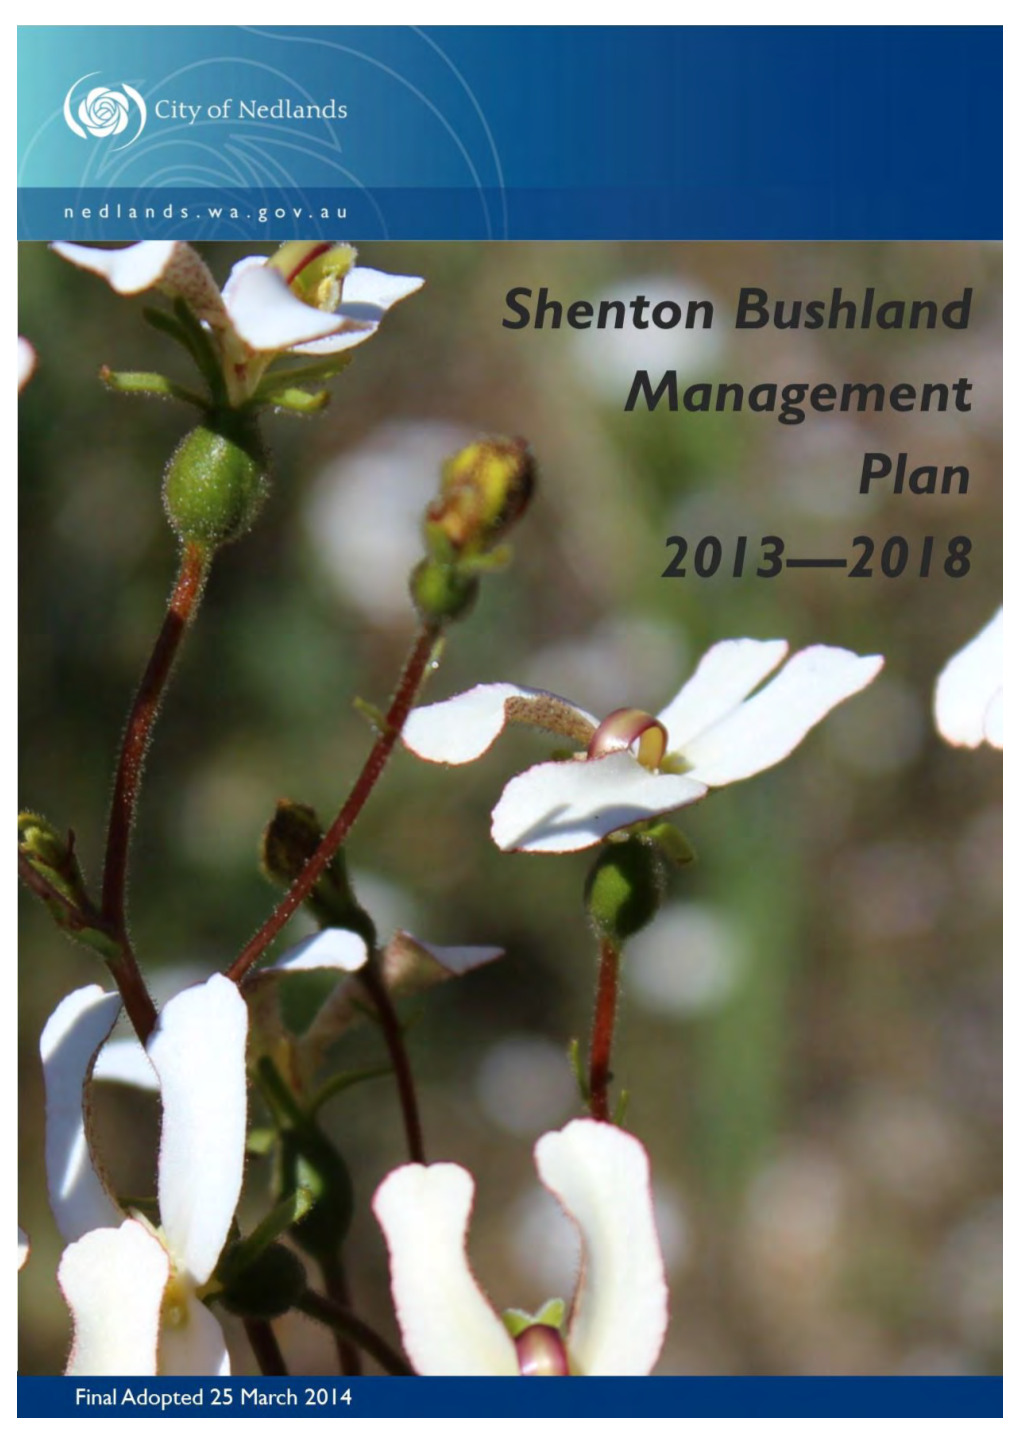 Shenton Bushland Management Plan 2013 - 2018 Prepared By: Vicki Shannon, City of Nedlands Doc